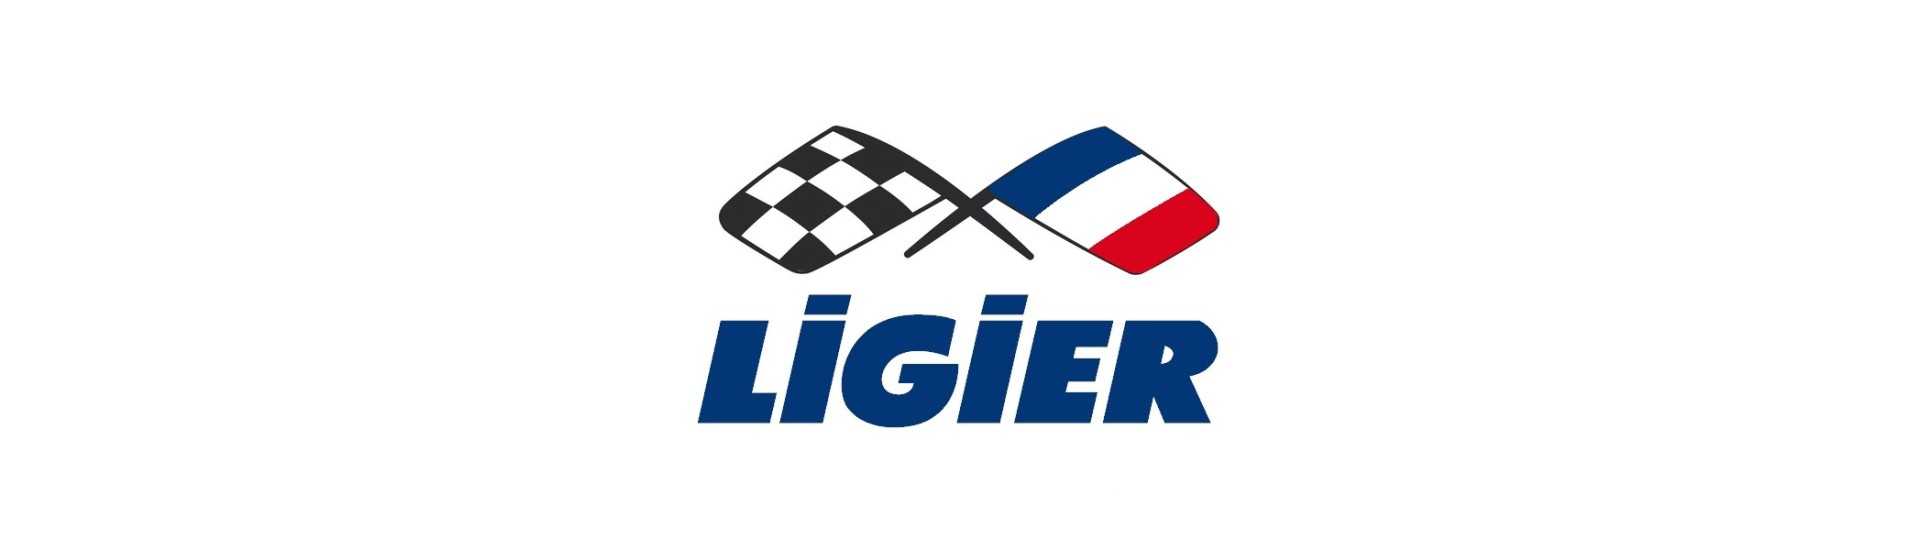 Voo ao melhor preço para o carro sem licença Ligier